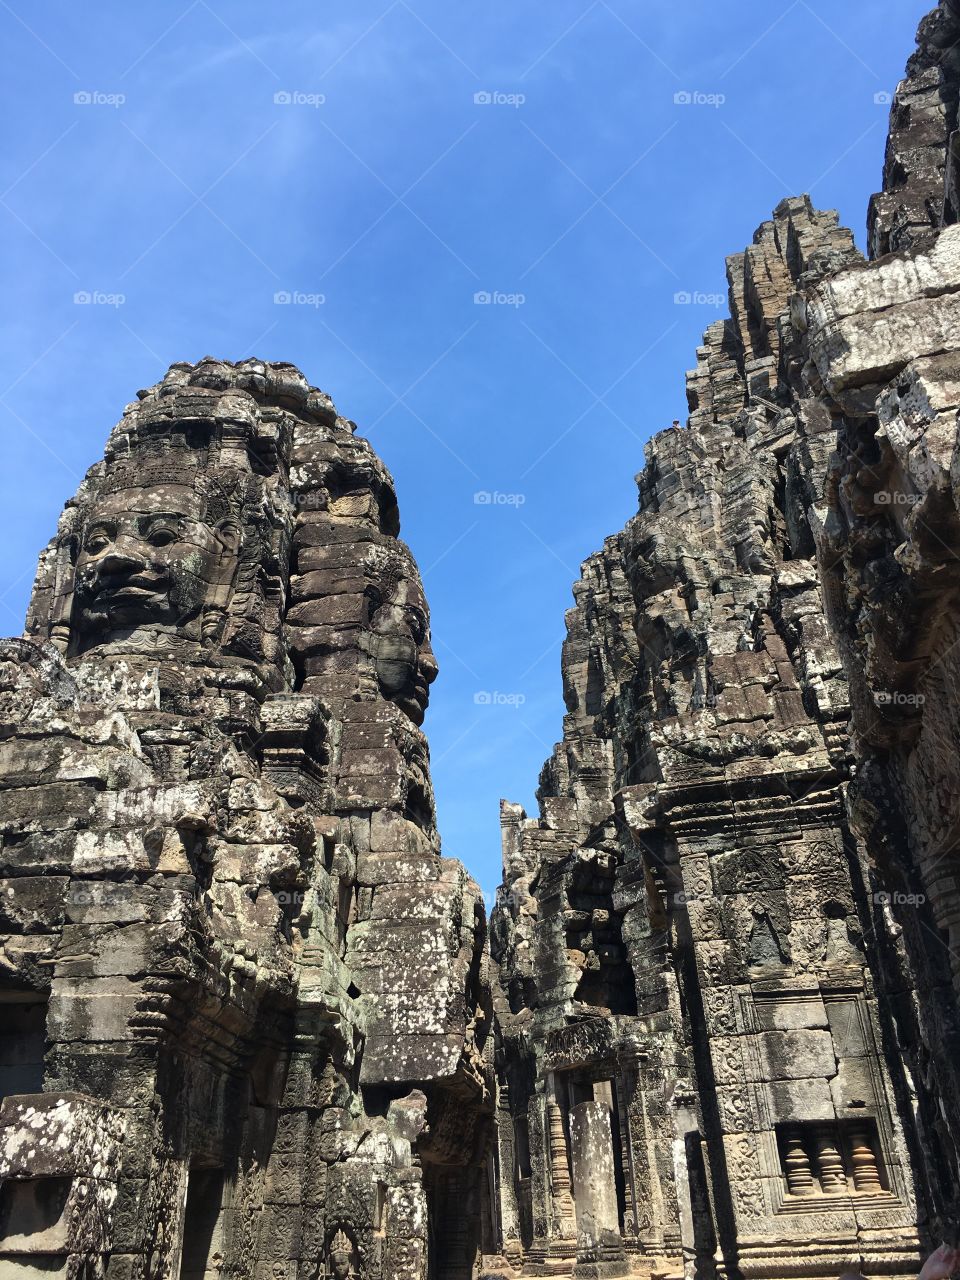 Religion
Angkor Thom, Cambodia
